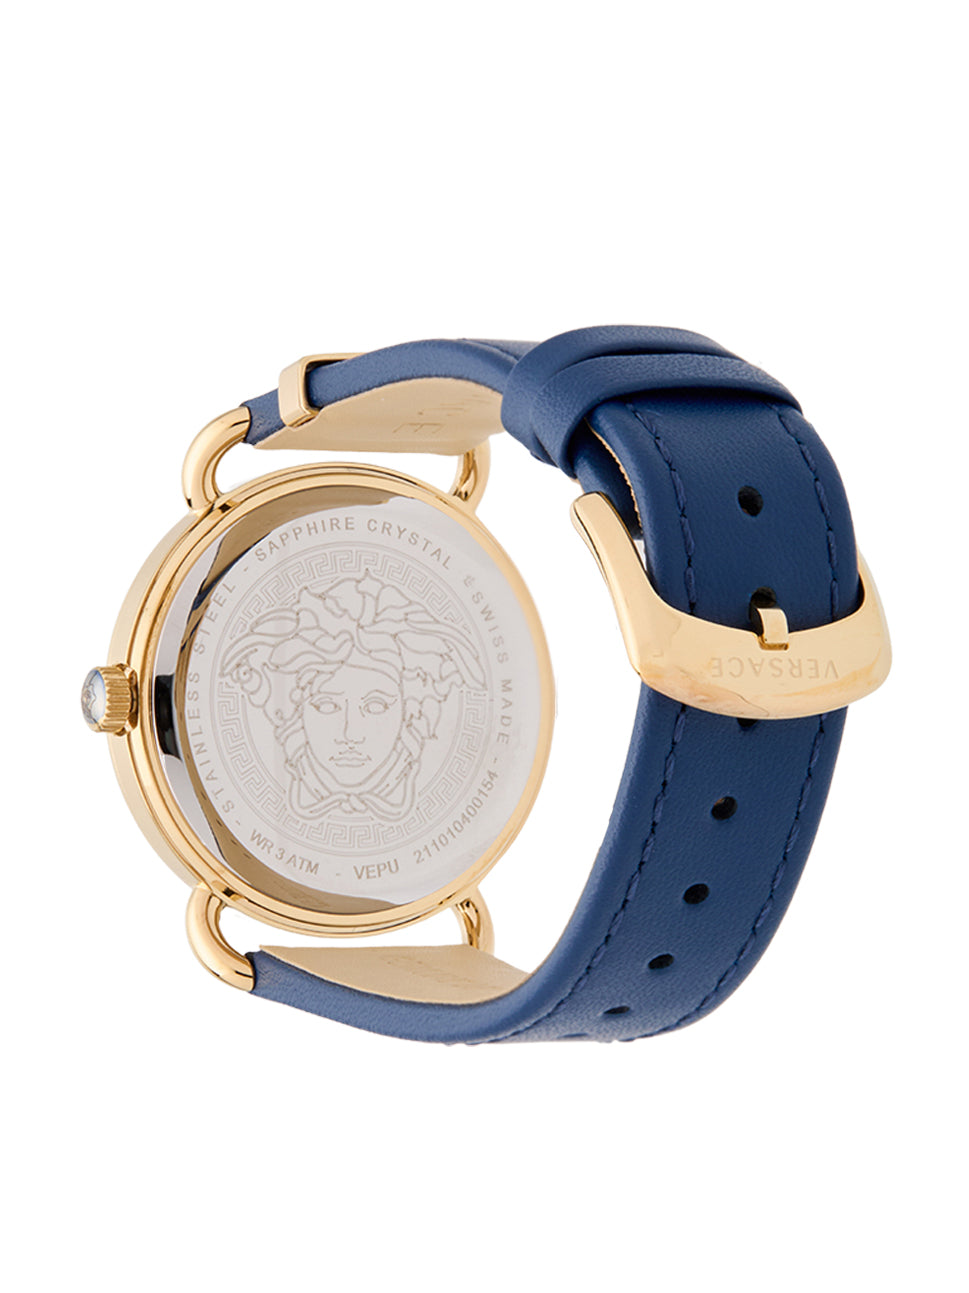 Versace Women's Medusa Quartz Watch Blue/Blue 36mm VEPU01121